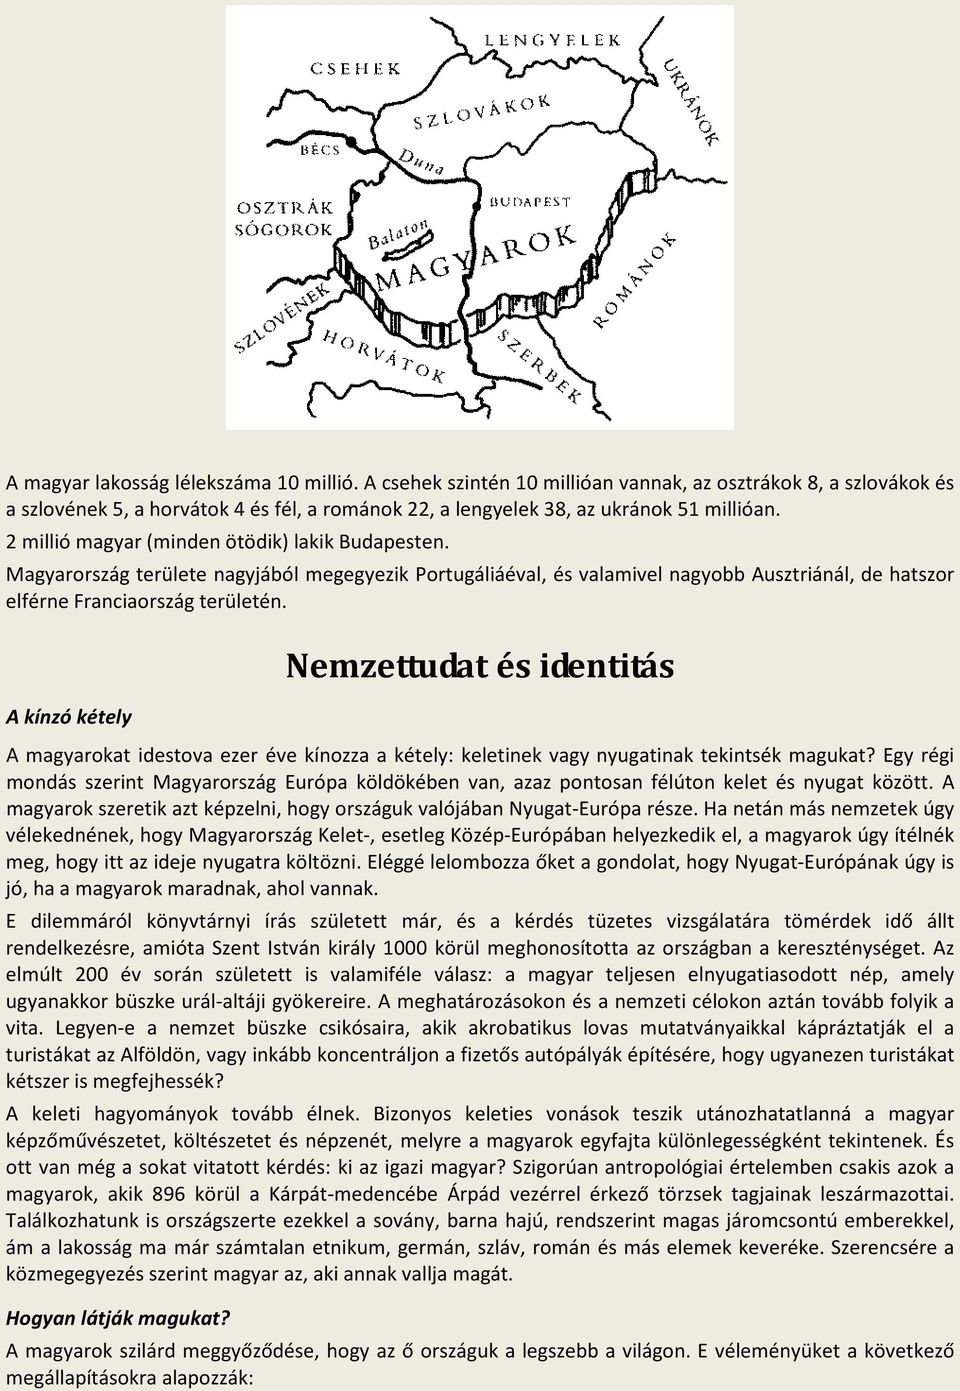 A kínzó kétely Nemzettudat és identitás A magyarokat idestova ezer éve kínozza a kétely: keletinek vagy nyugatinak tekintsék magukat?